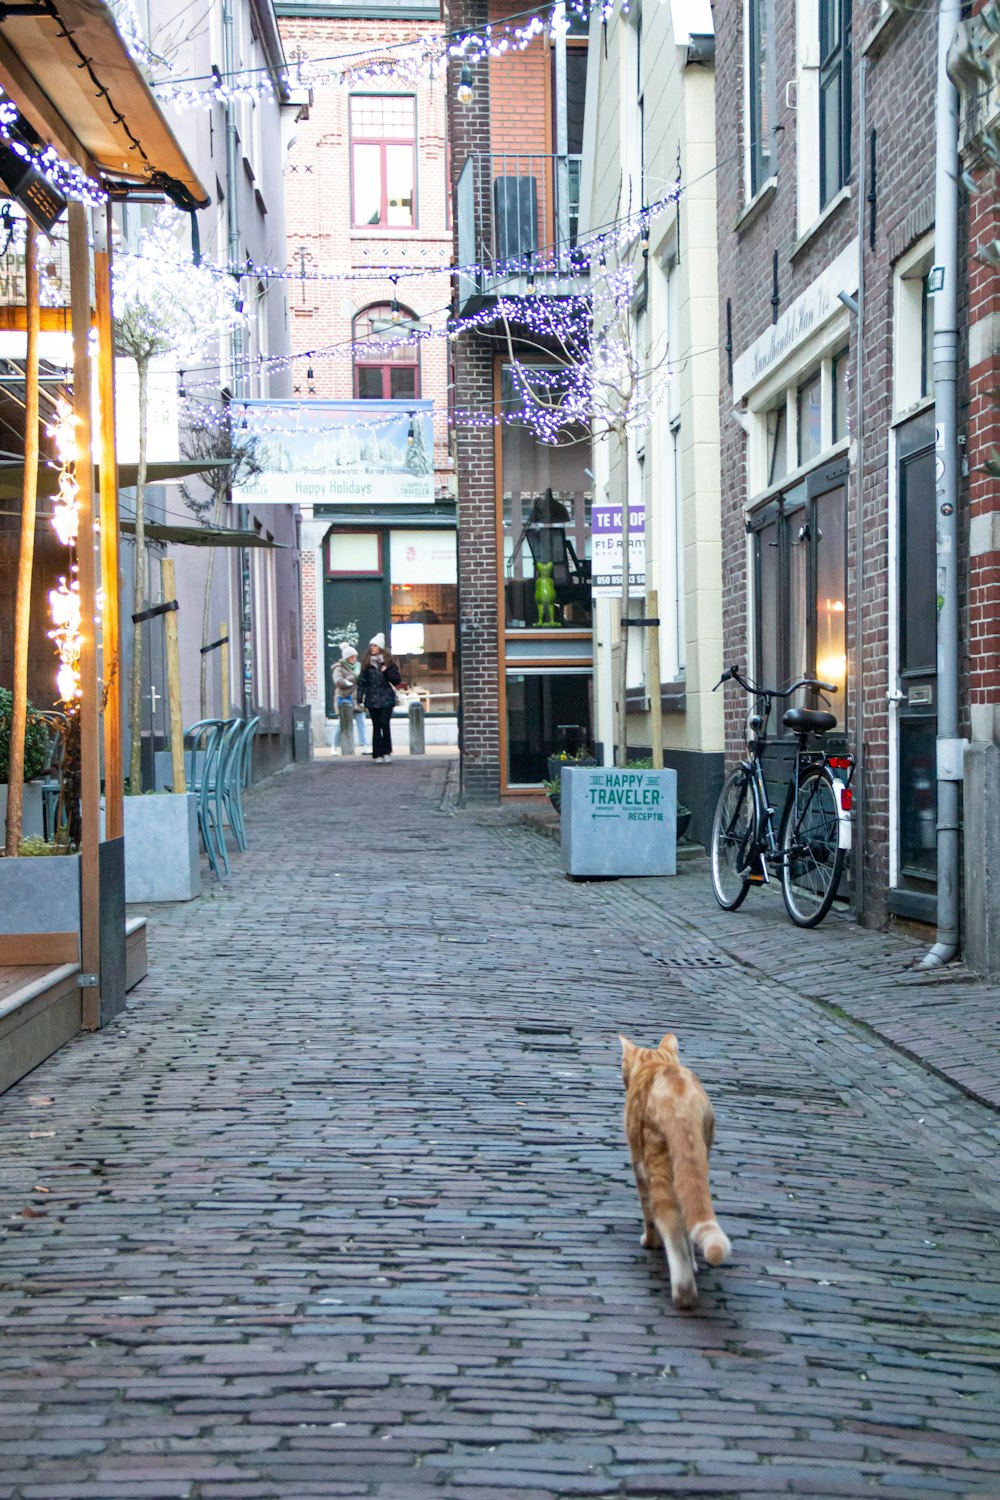 a cat is walking down a brick street